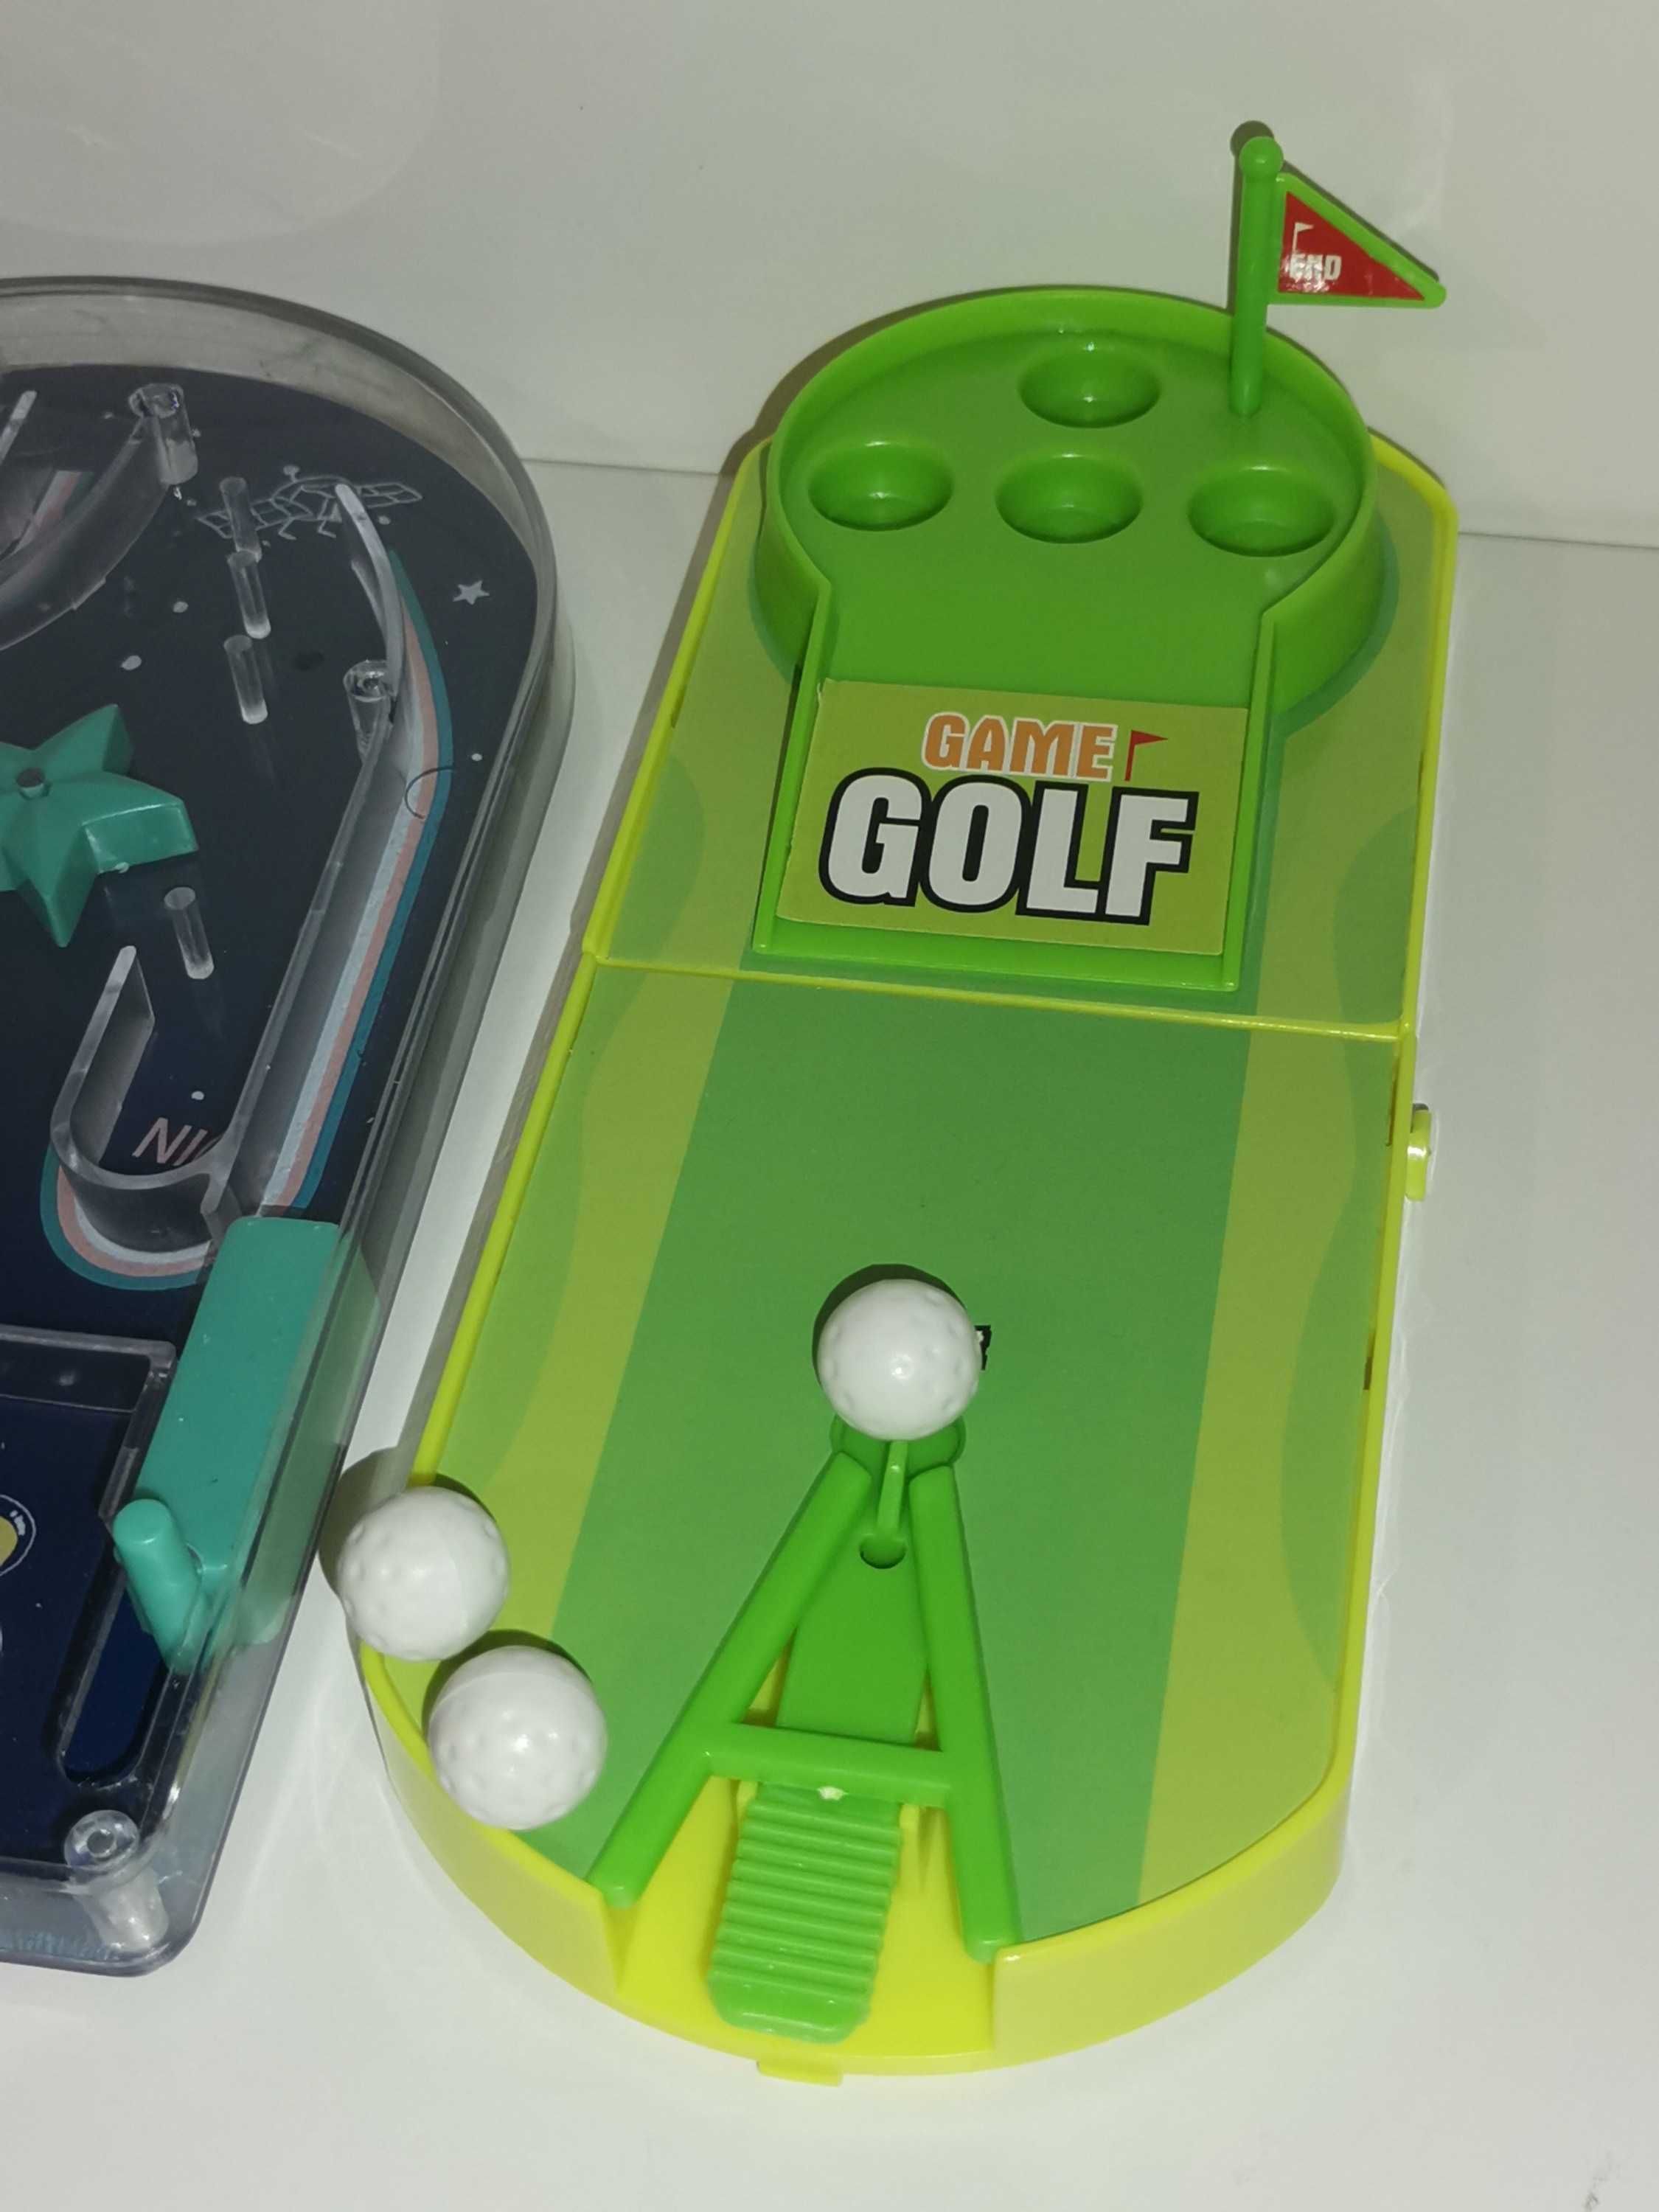 Mini gry x 2 - golf i kosmos - zręcznościowe, fliper - komplet, podróż